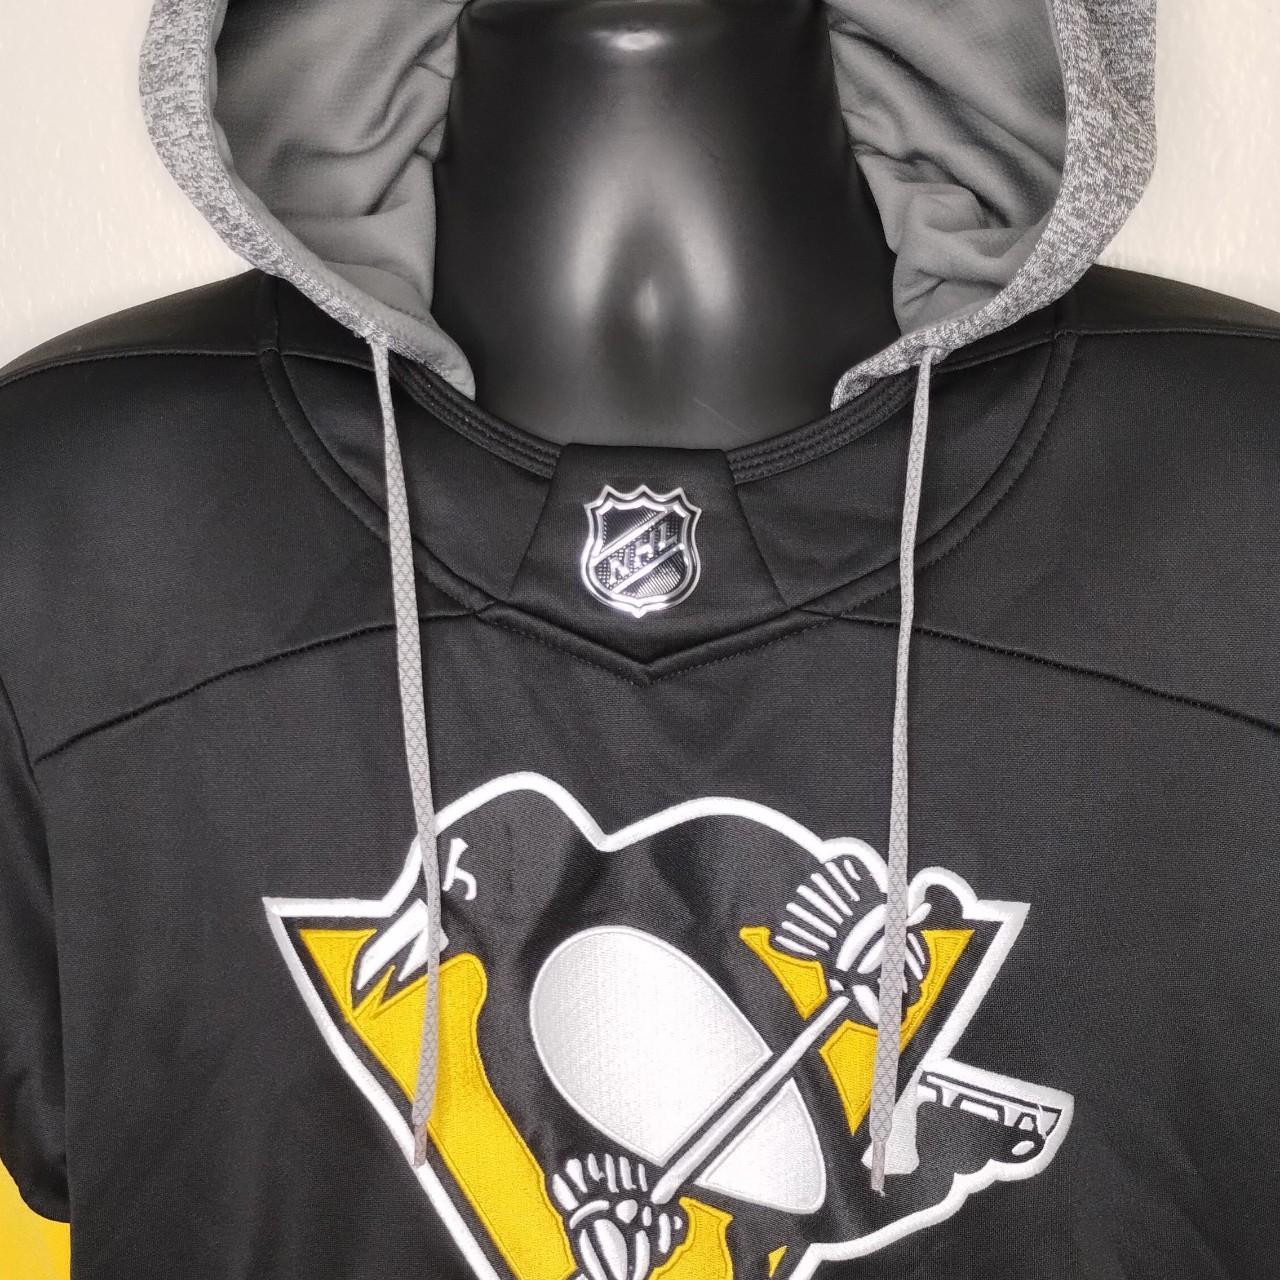 Pittsburgh Penguins Men's Medium NHL Jersey Hoodie - Depop